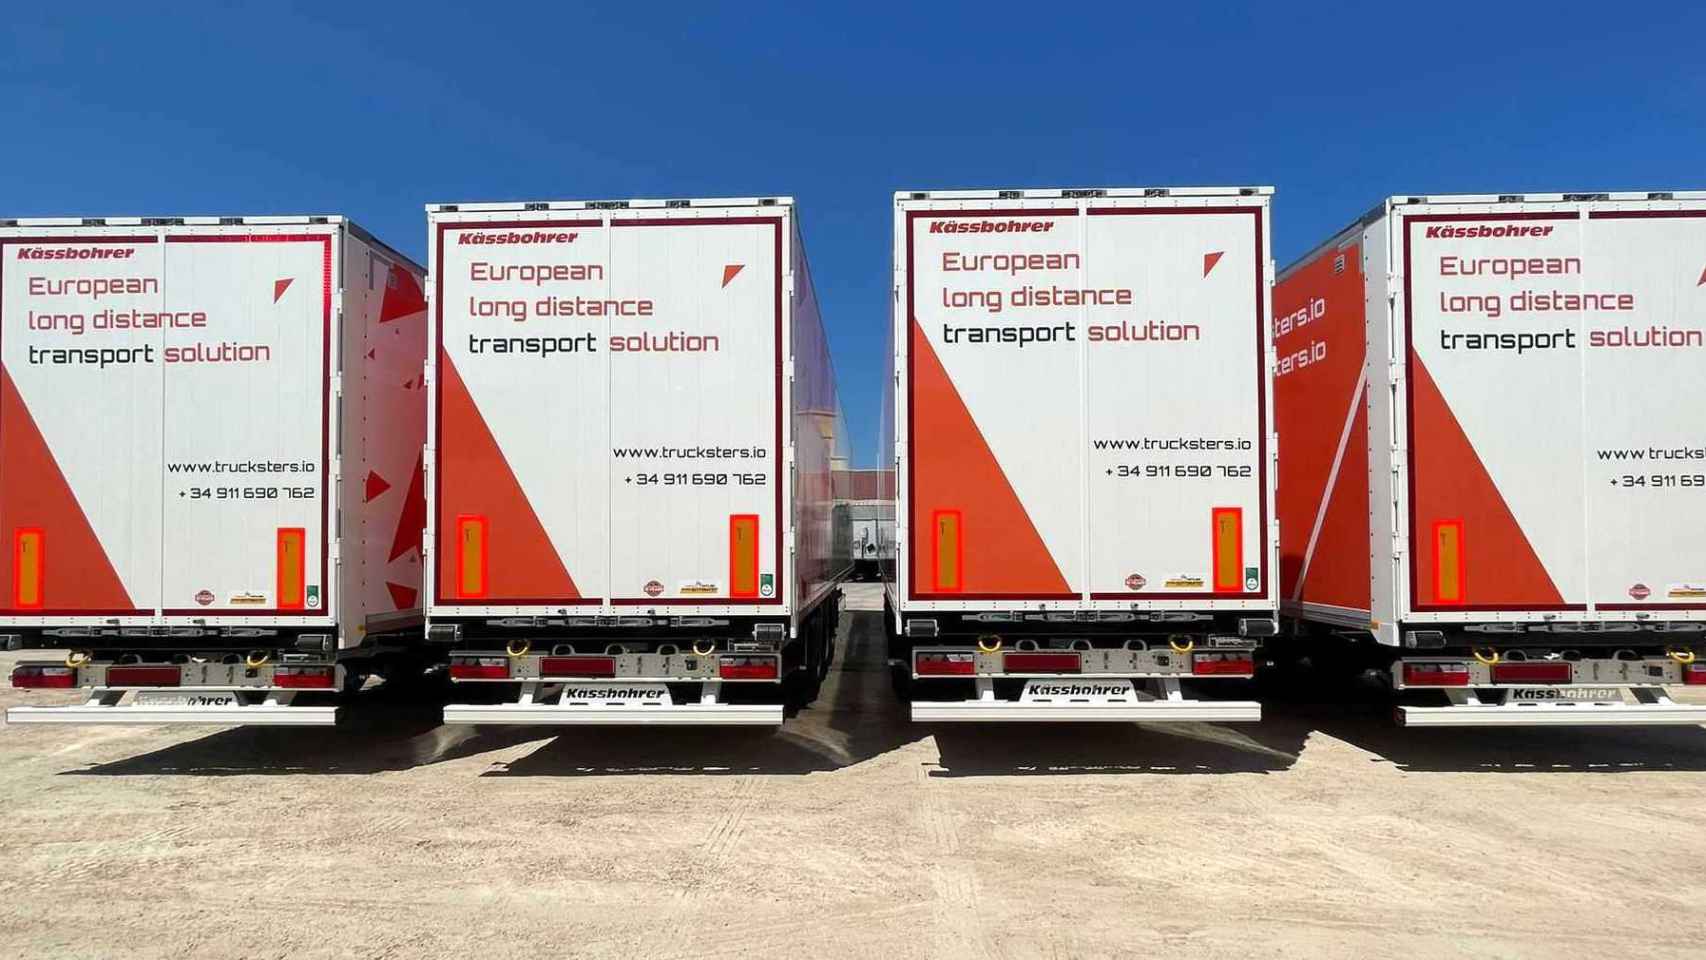 Trucksters ya reduce un 50% la circulación de camiones en vacío en comparación con la media de la industria gracias a su sistema de relevos.